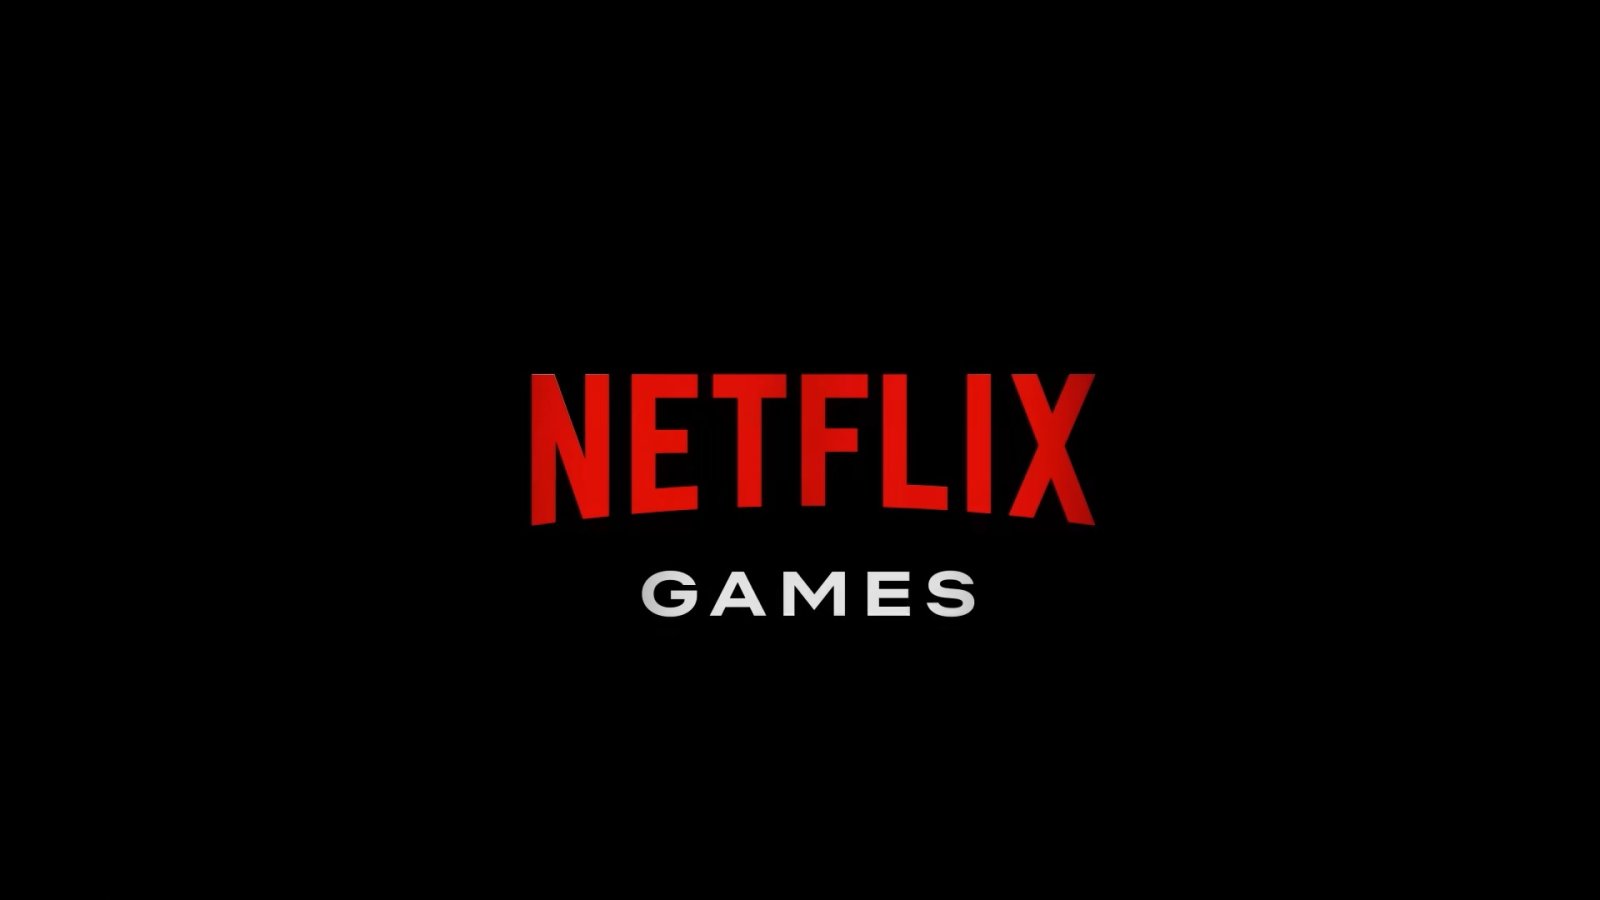 Netflix กำลังพัฒนาเกมใหม่กว่า 10 เกมจากสตูดิโอในเครือและกว่า 90 เกมจากสตูดิโออื่น ๆ